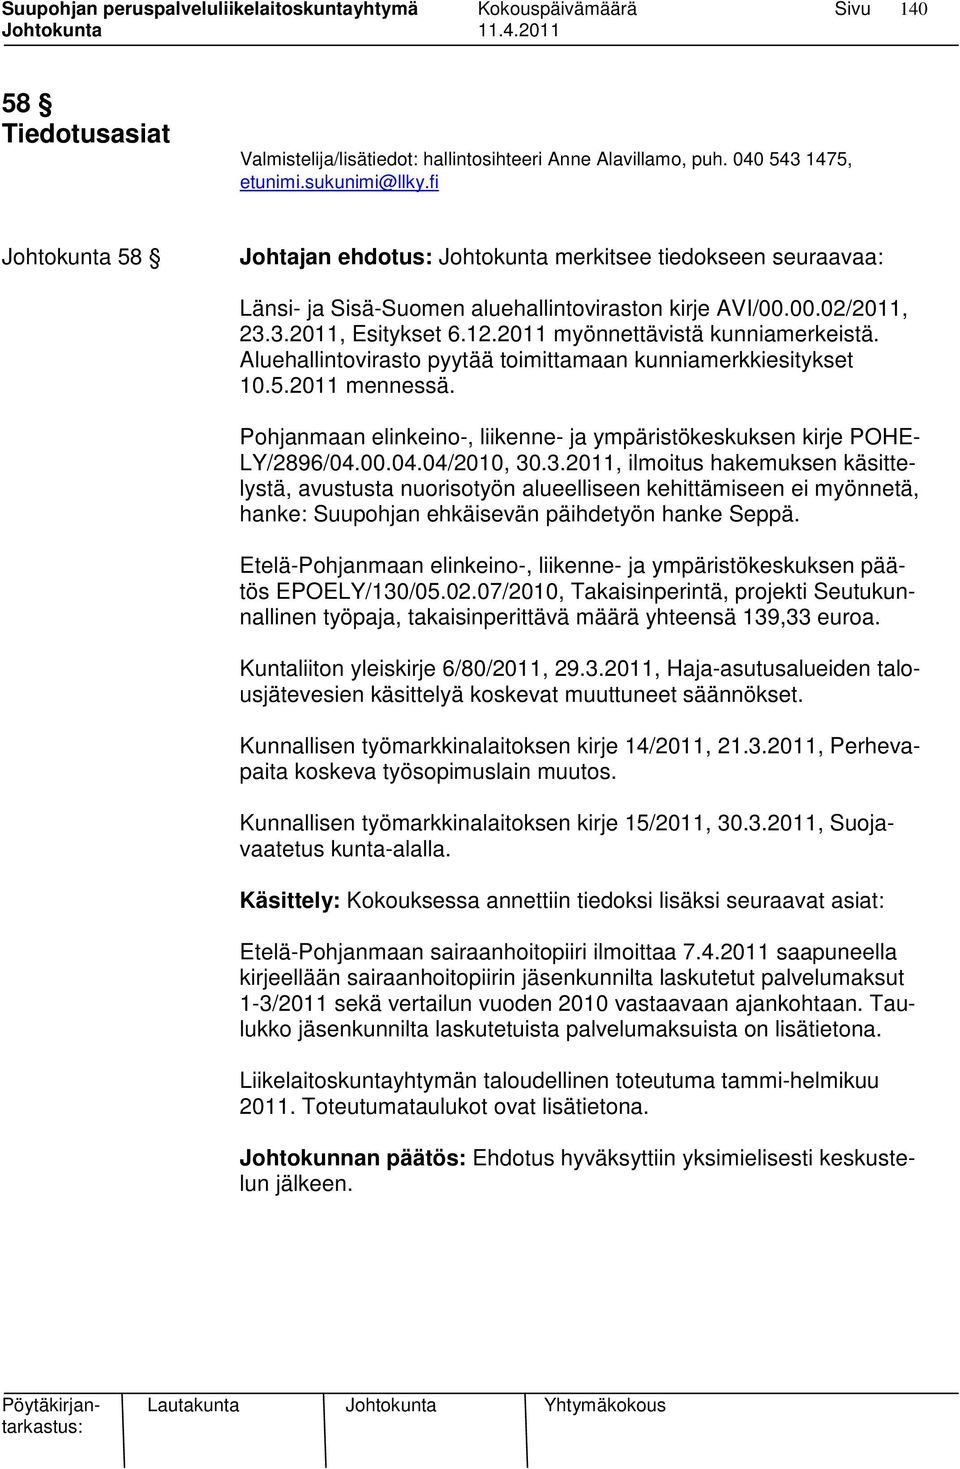 2011 myönnettävistä kunniamerkeistä. Aluehallintovirasto pyytää toimittamaan kunniamerkkiesitykset 10.5.2011 mennessä. Pohjanmaan elinkeino-, liikenne- ja ympäristökeskuksen kirje POHE- LY/2896/04.00.